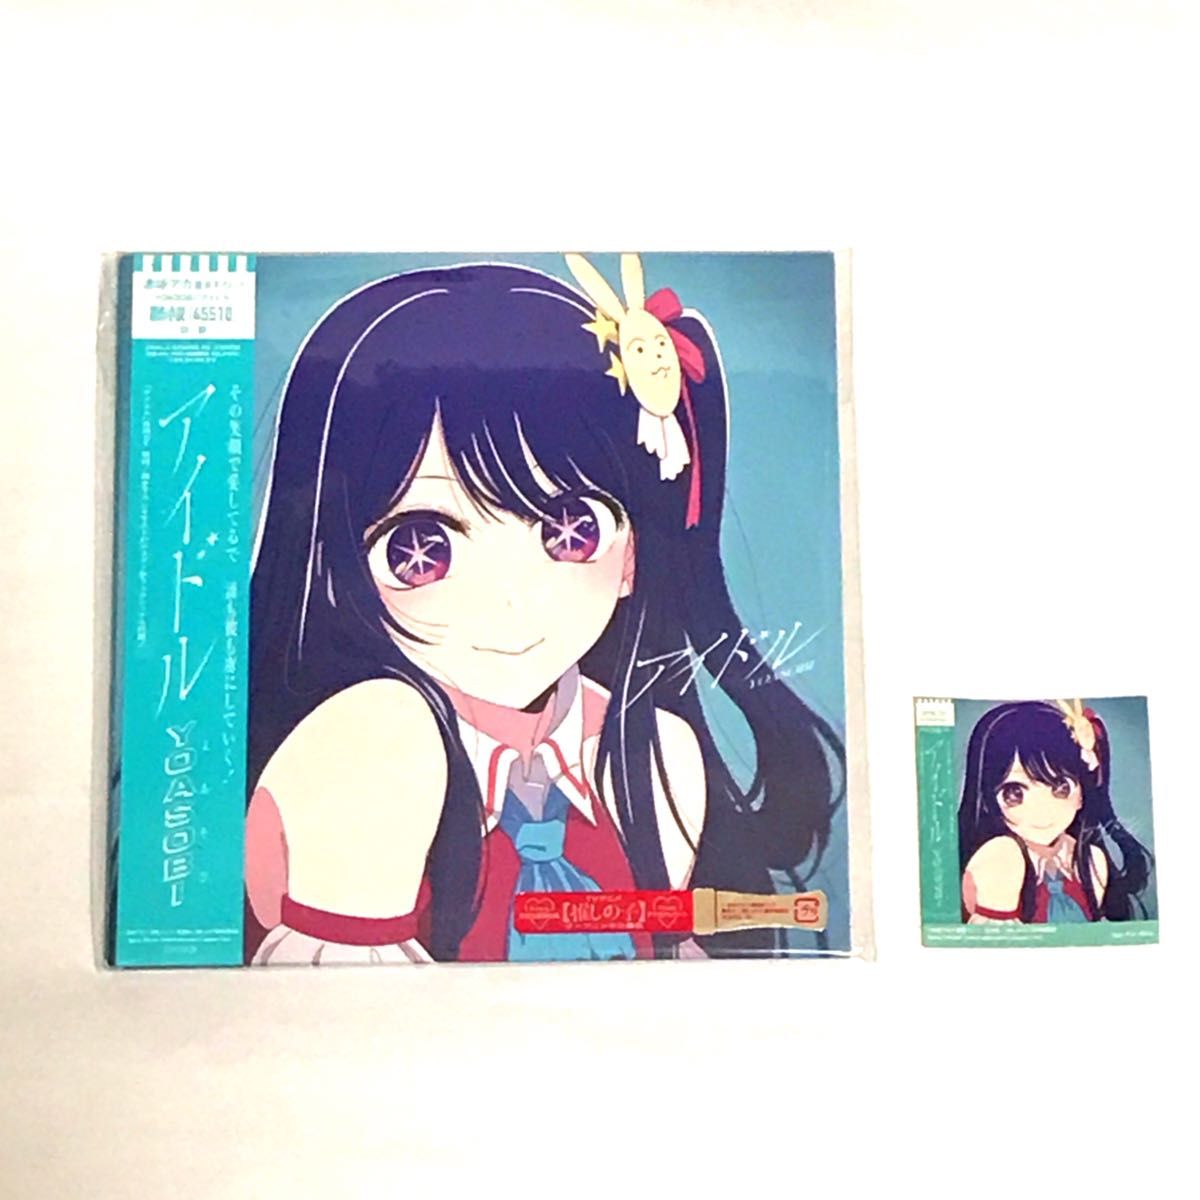 【新品未使用】 YOASOBI アイドル 7インチ アナログ盤 完全生産限定盤 ブックレット ステッカー付 LP レコード